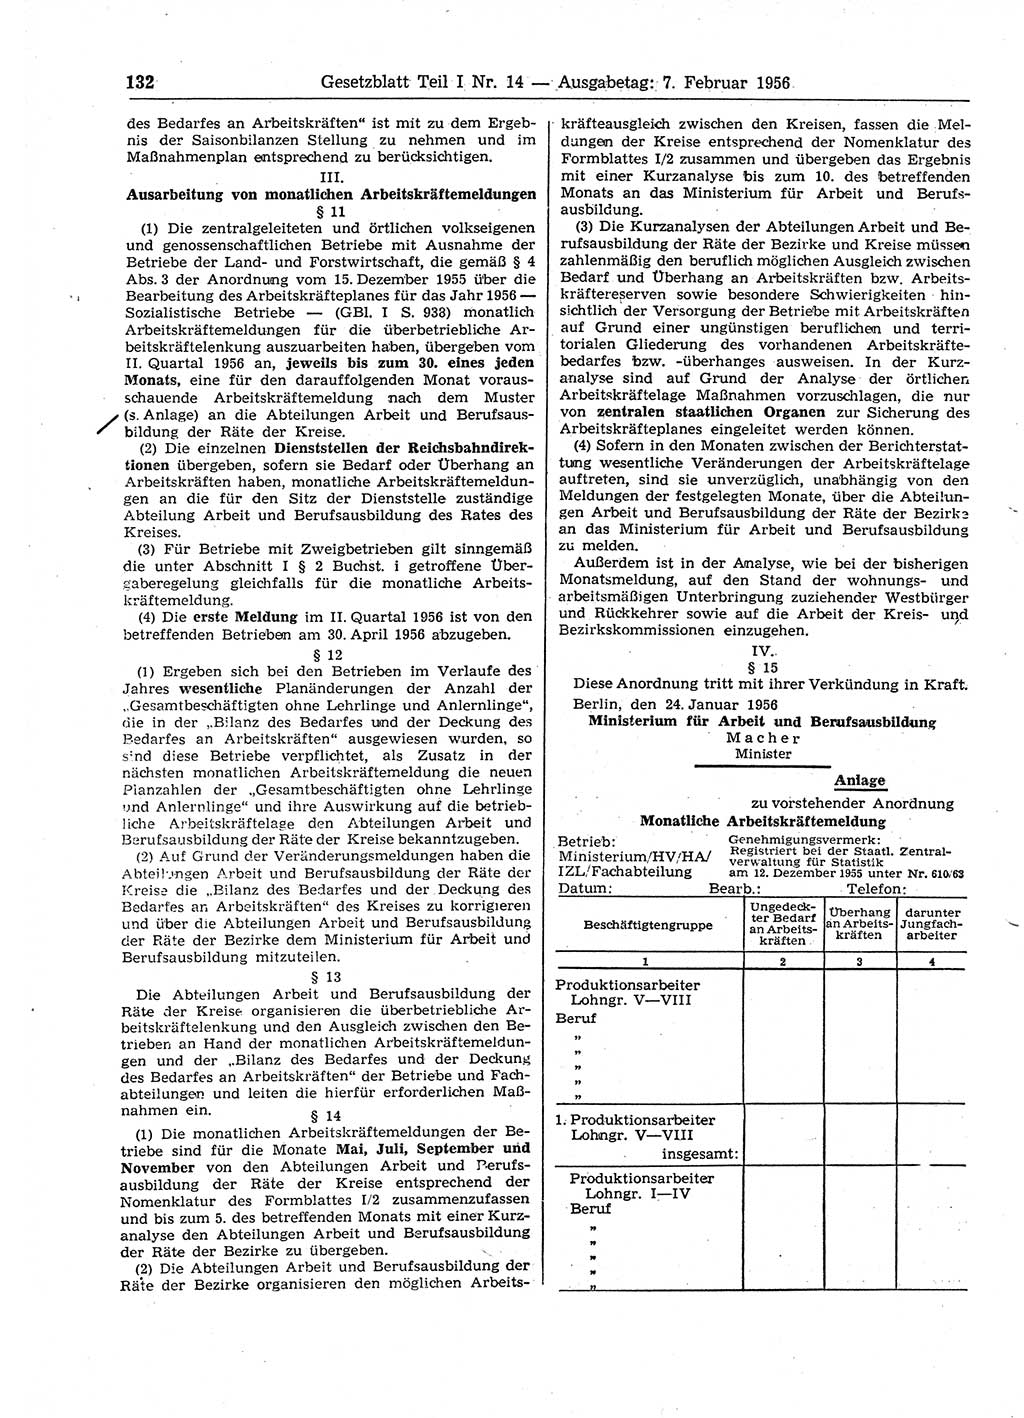 Gesetzblatt (GBl.) der Deutschen Demokratischen Republik (DDR) Teil Ⅰ 1956, Seite 132 (GBl. DDR Ⅰ 1956, S. 132)